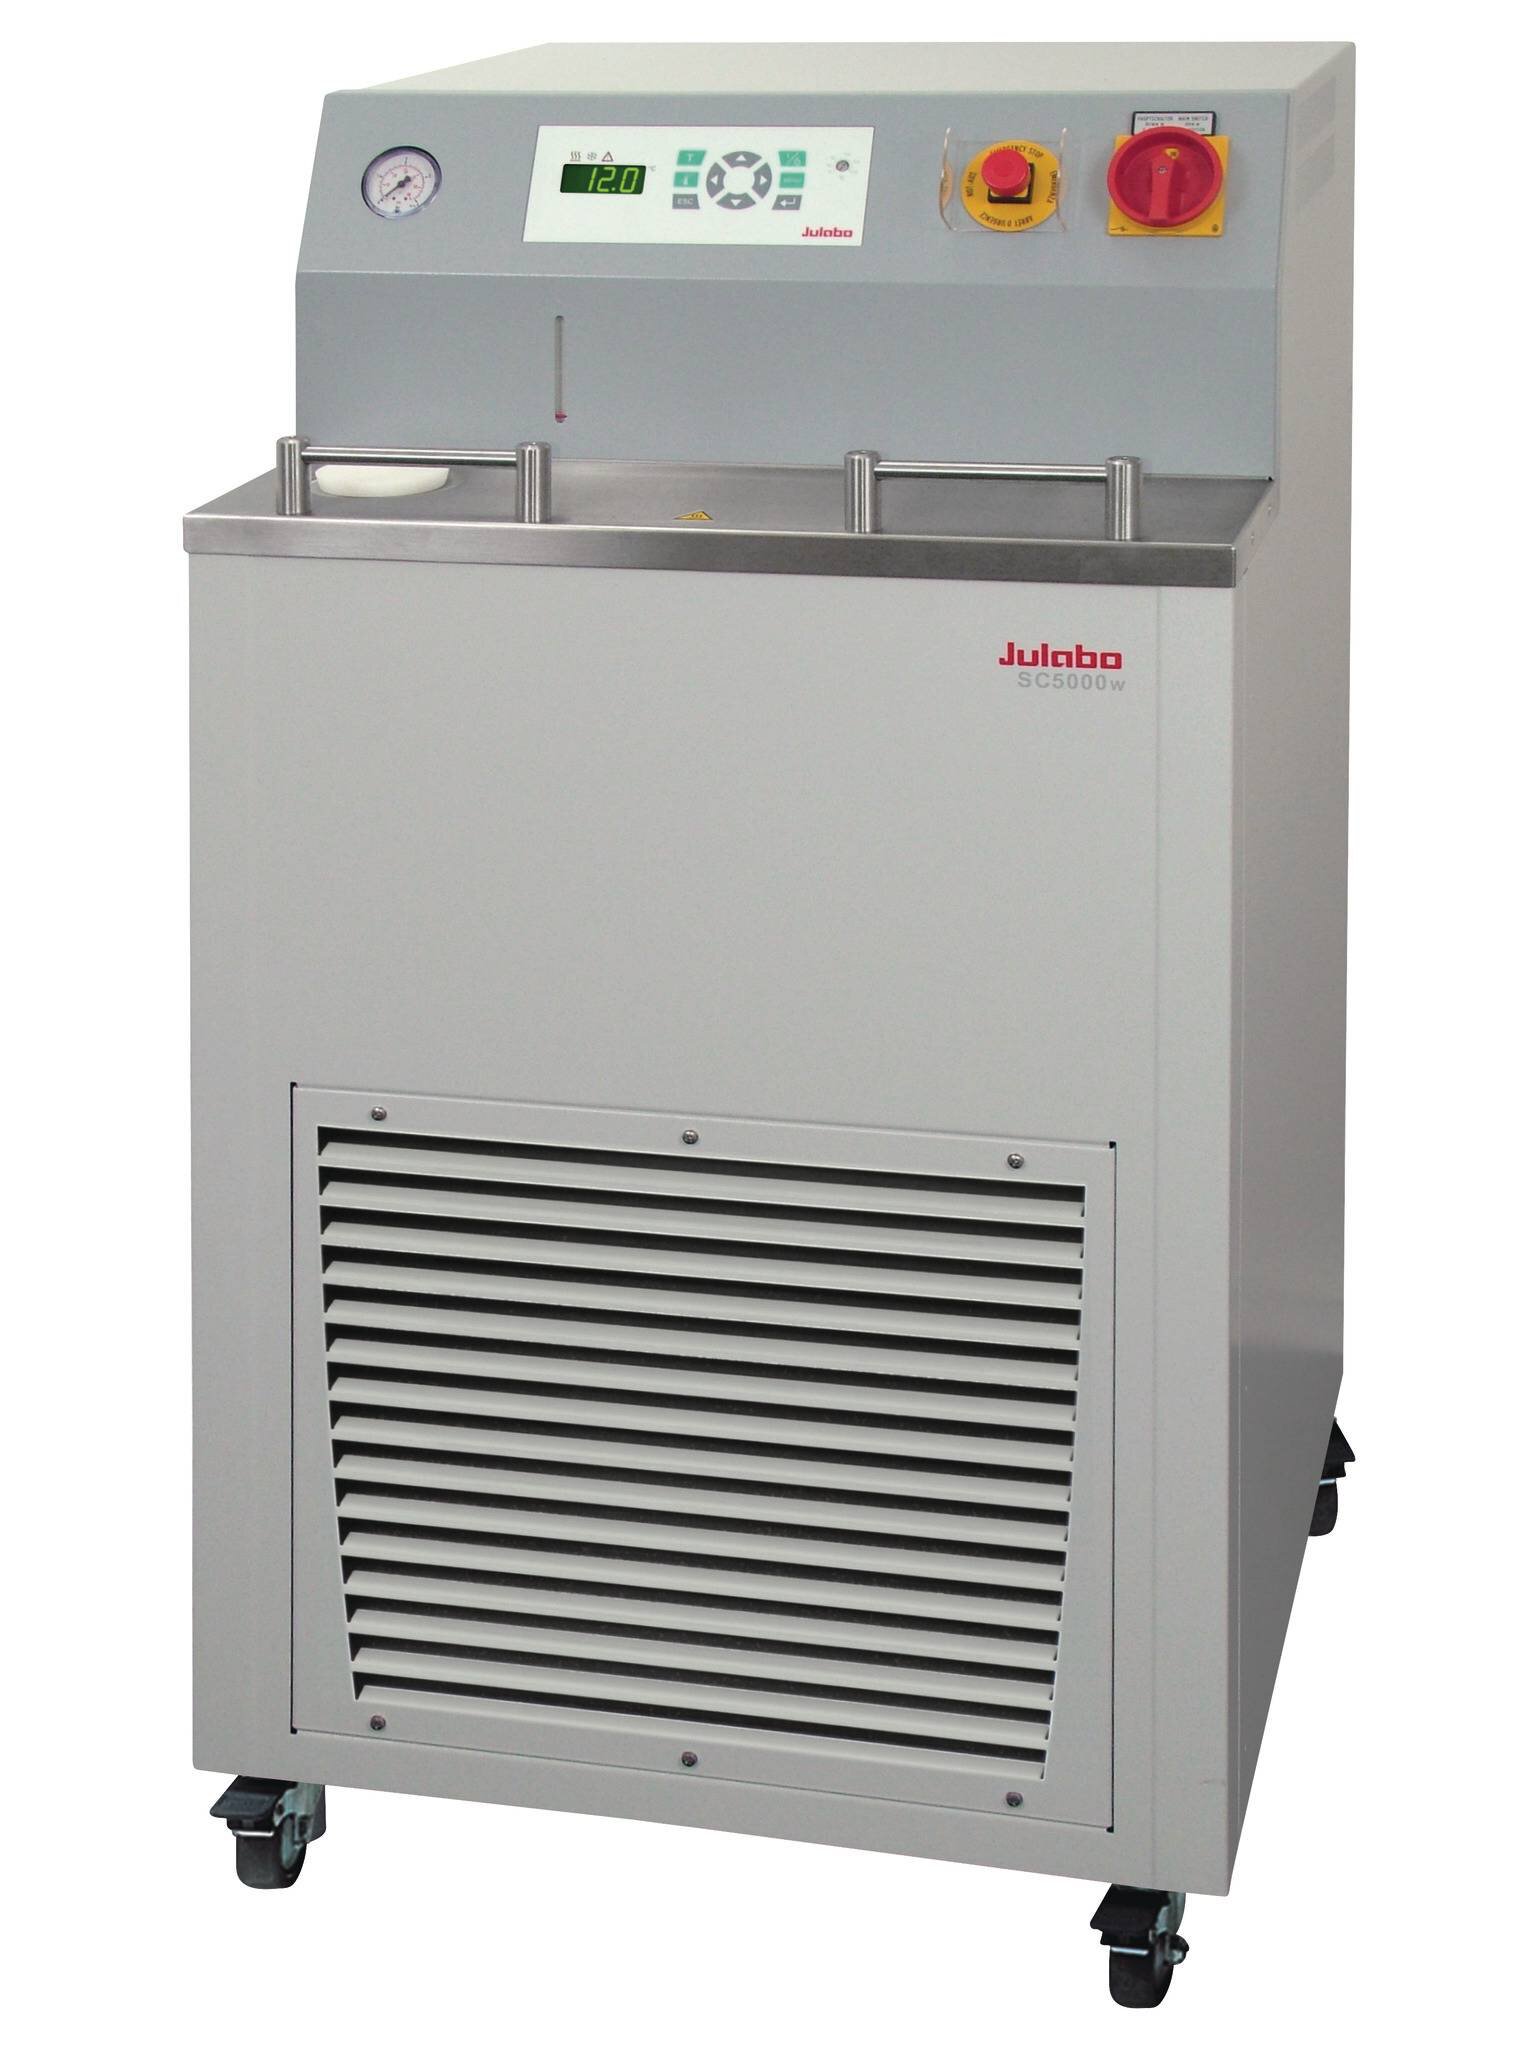 Recirculador de Refrigeración SC5000w de JULABO imágen 1